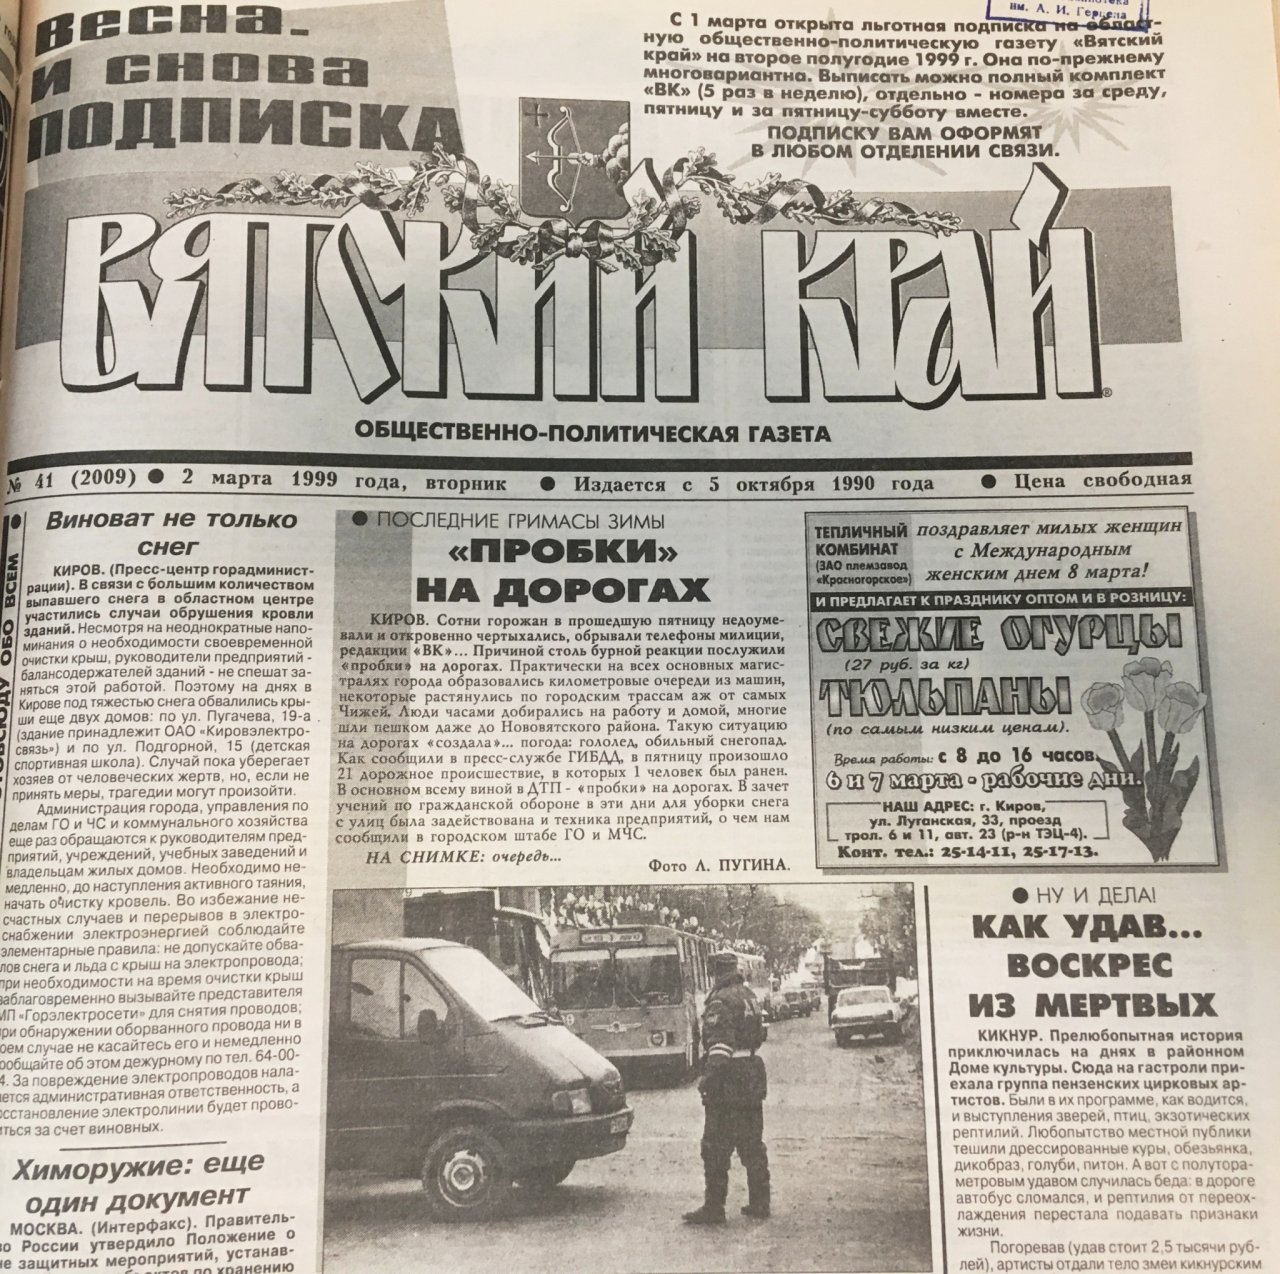 Смешная кража, оживший удав и ДТП с участием губернатора: о чем писали кировские газеты 20 лет назад